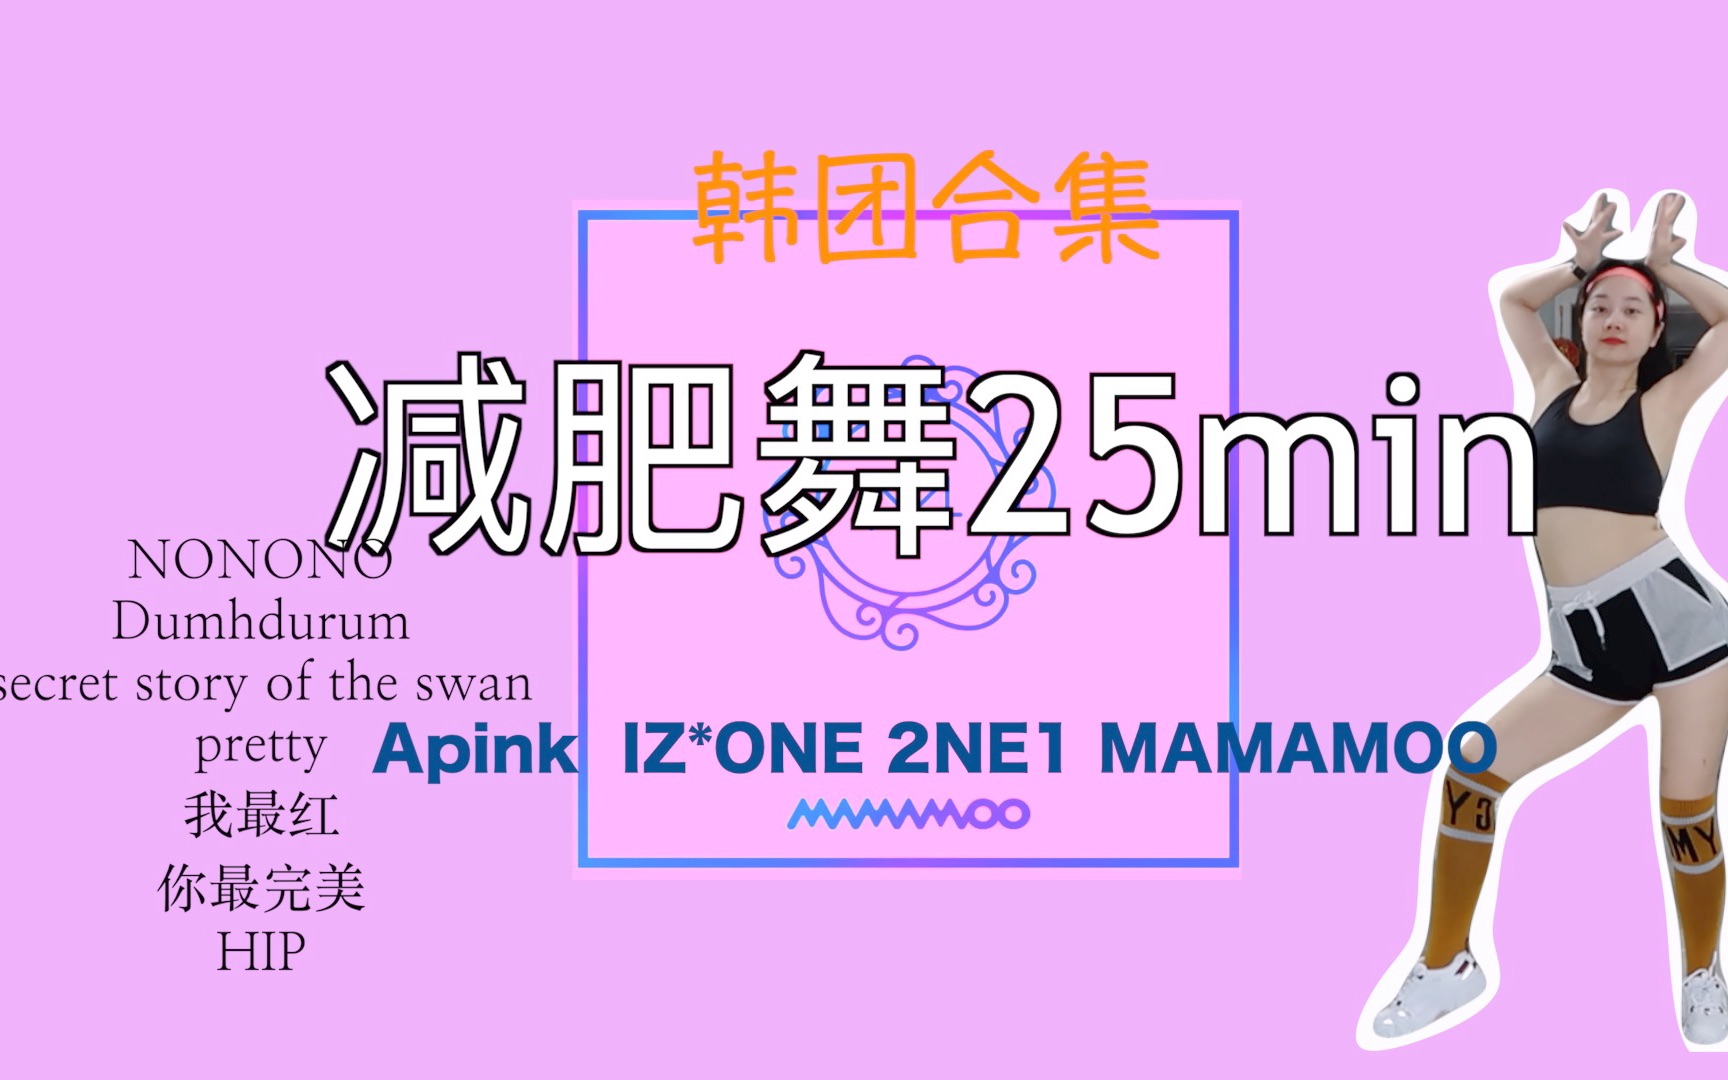 25min女团减肥舞合集 |Apink IZ*ONE 2NE1 MAMAMOO | 一起来快乐跳舞吧